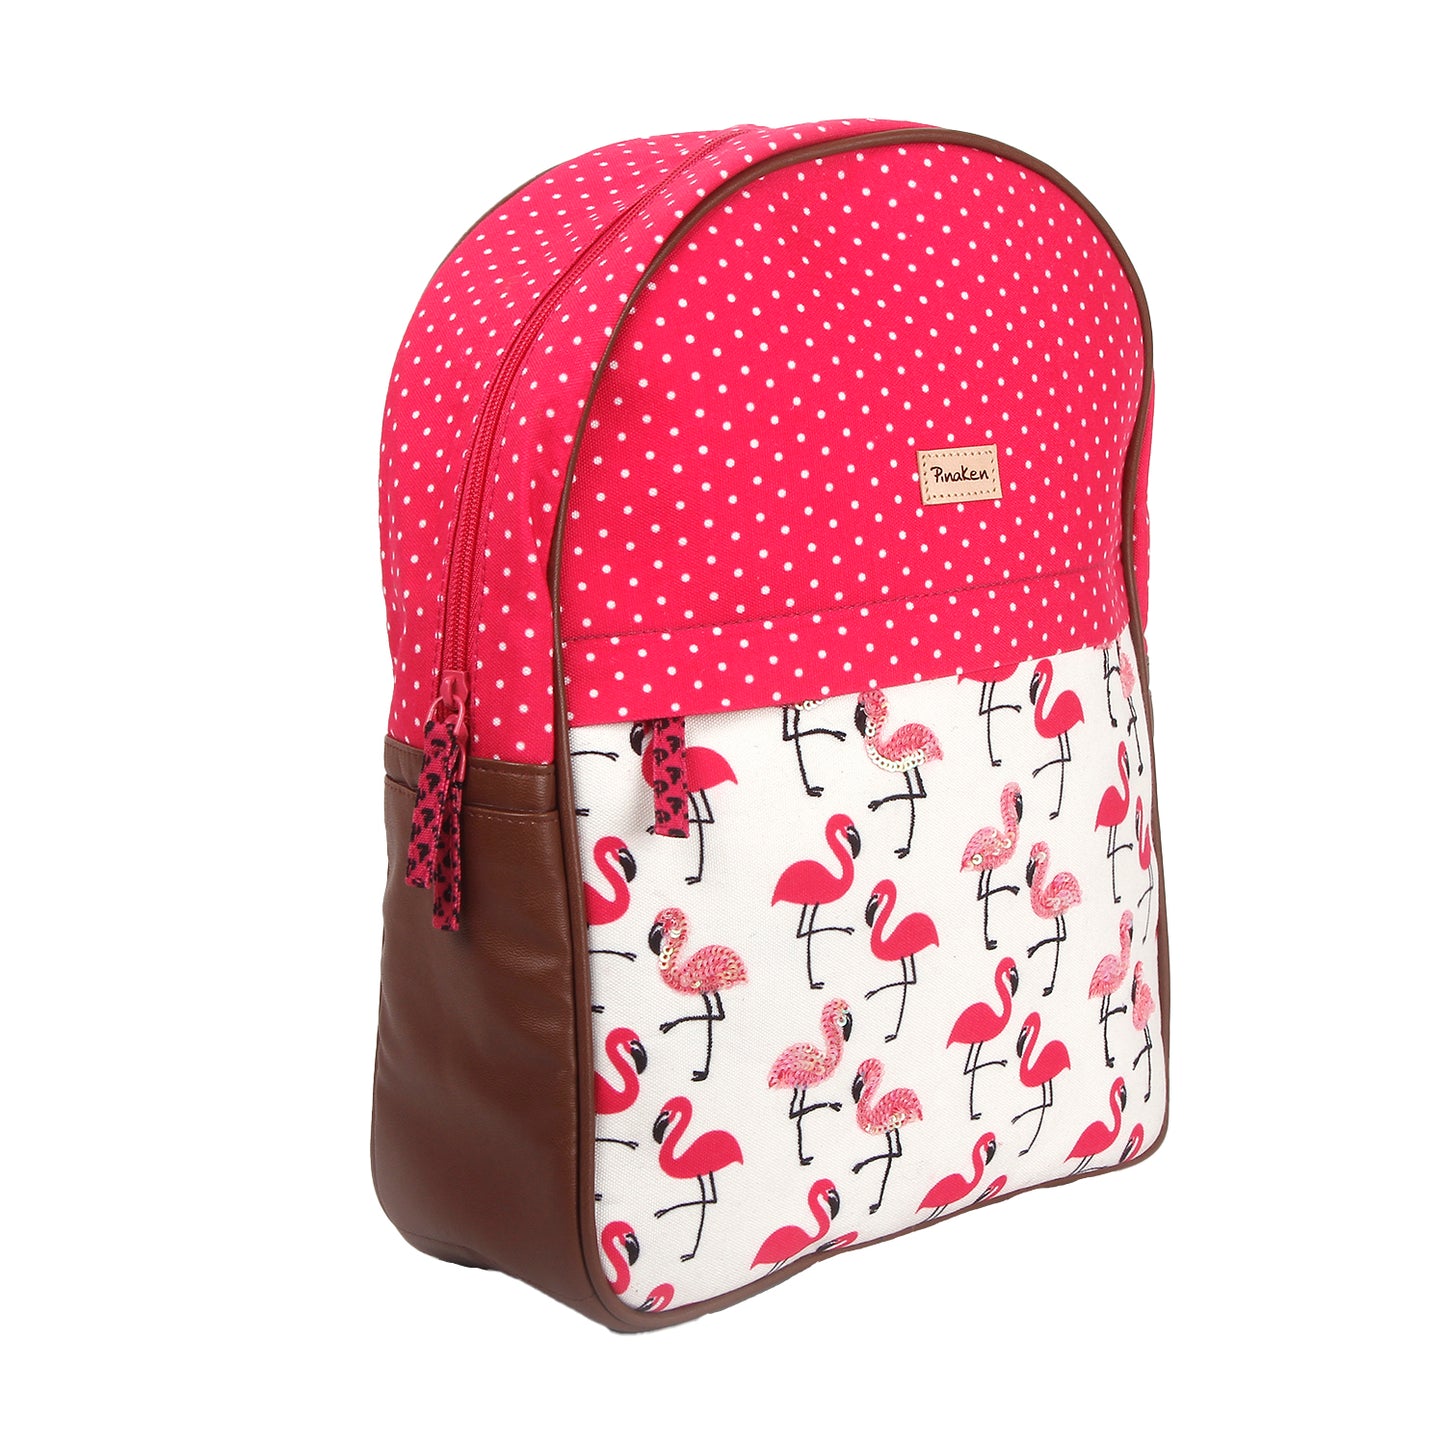 Flamingo Blush Backpack Large